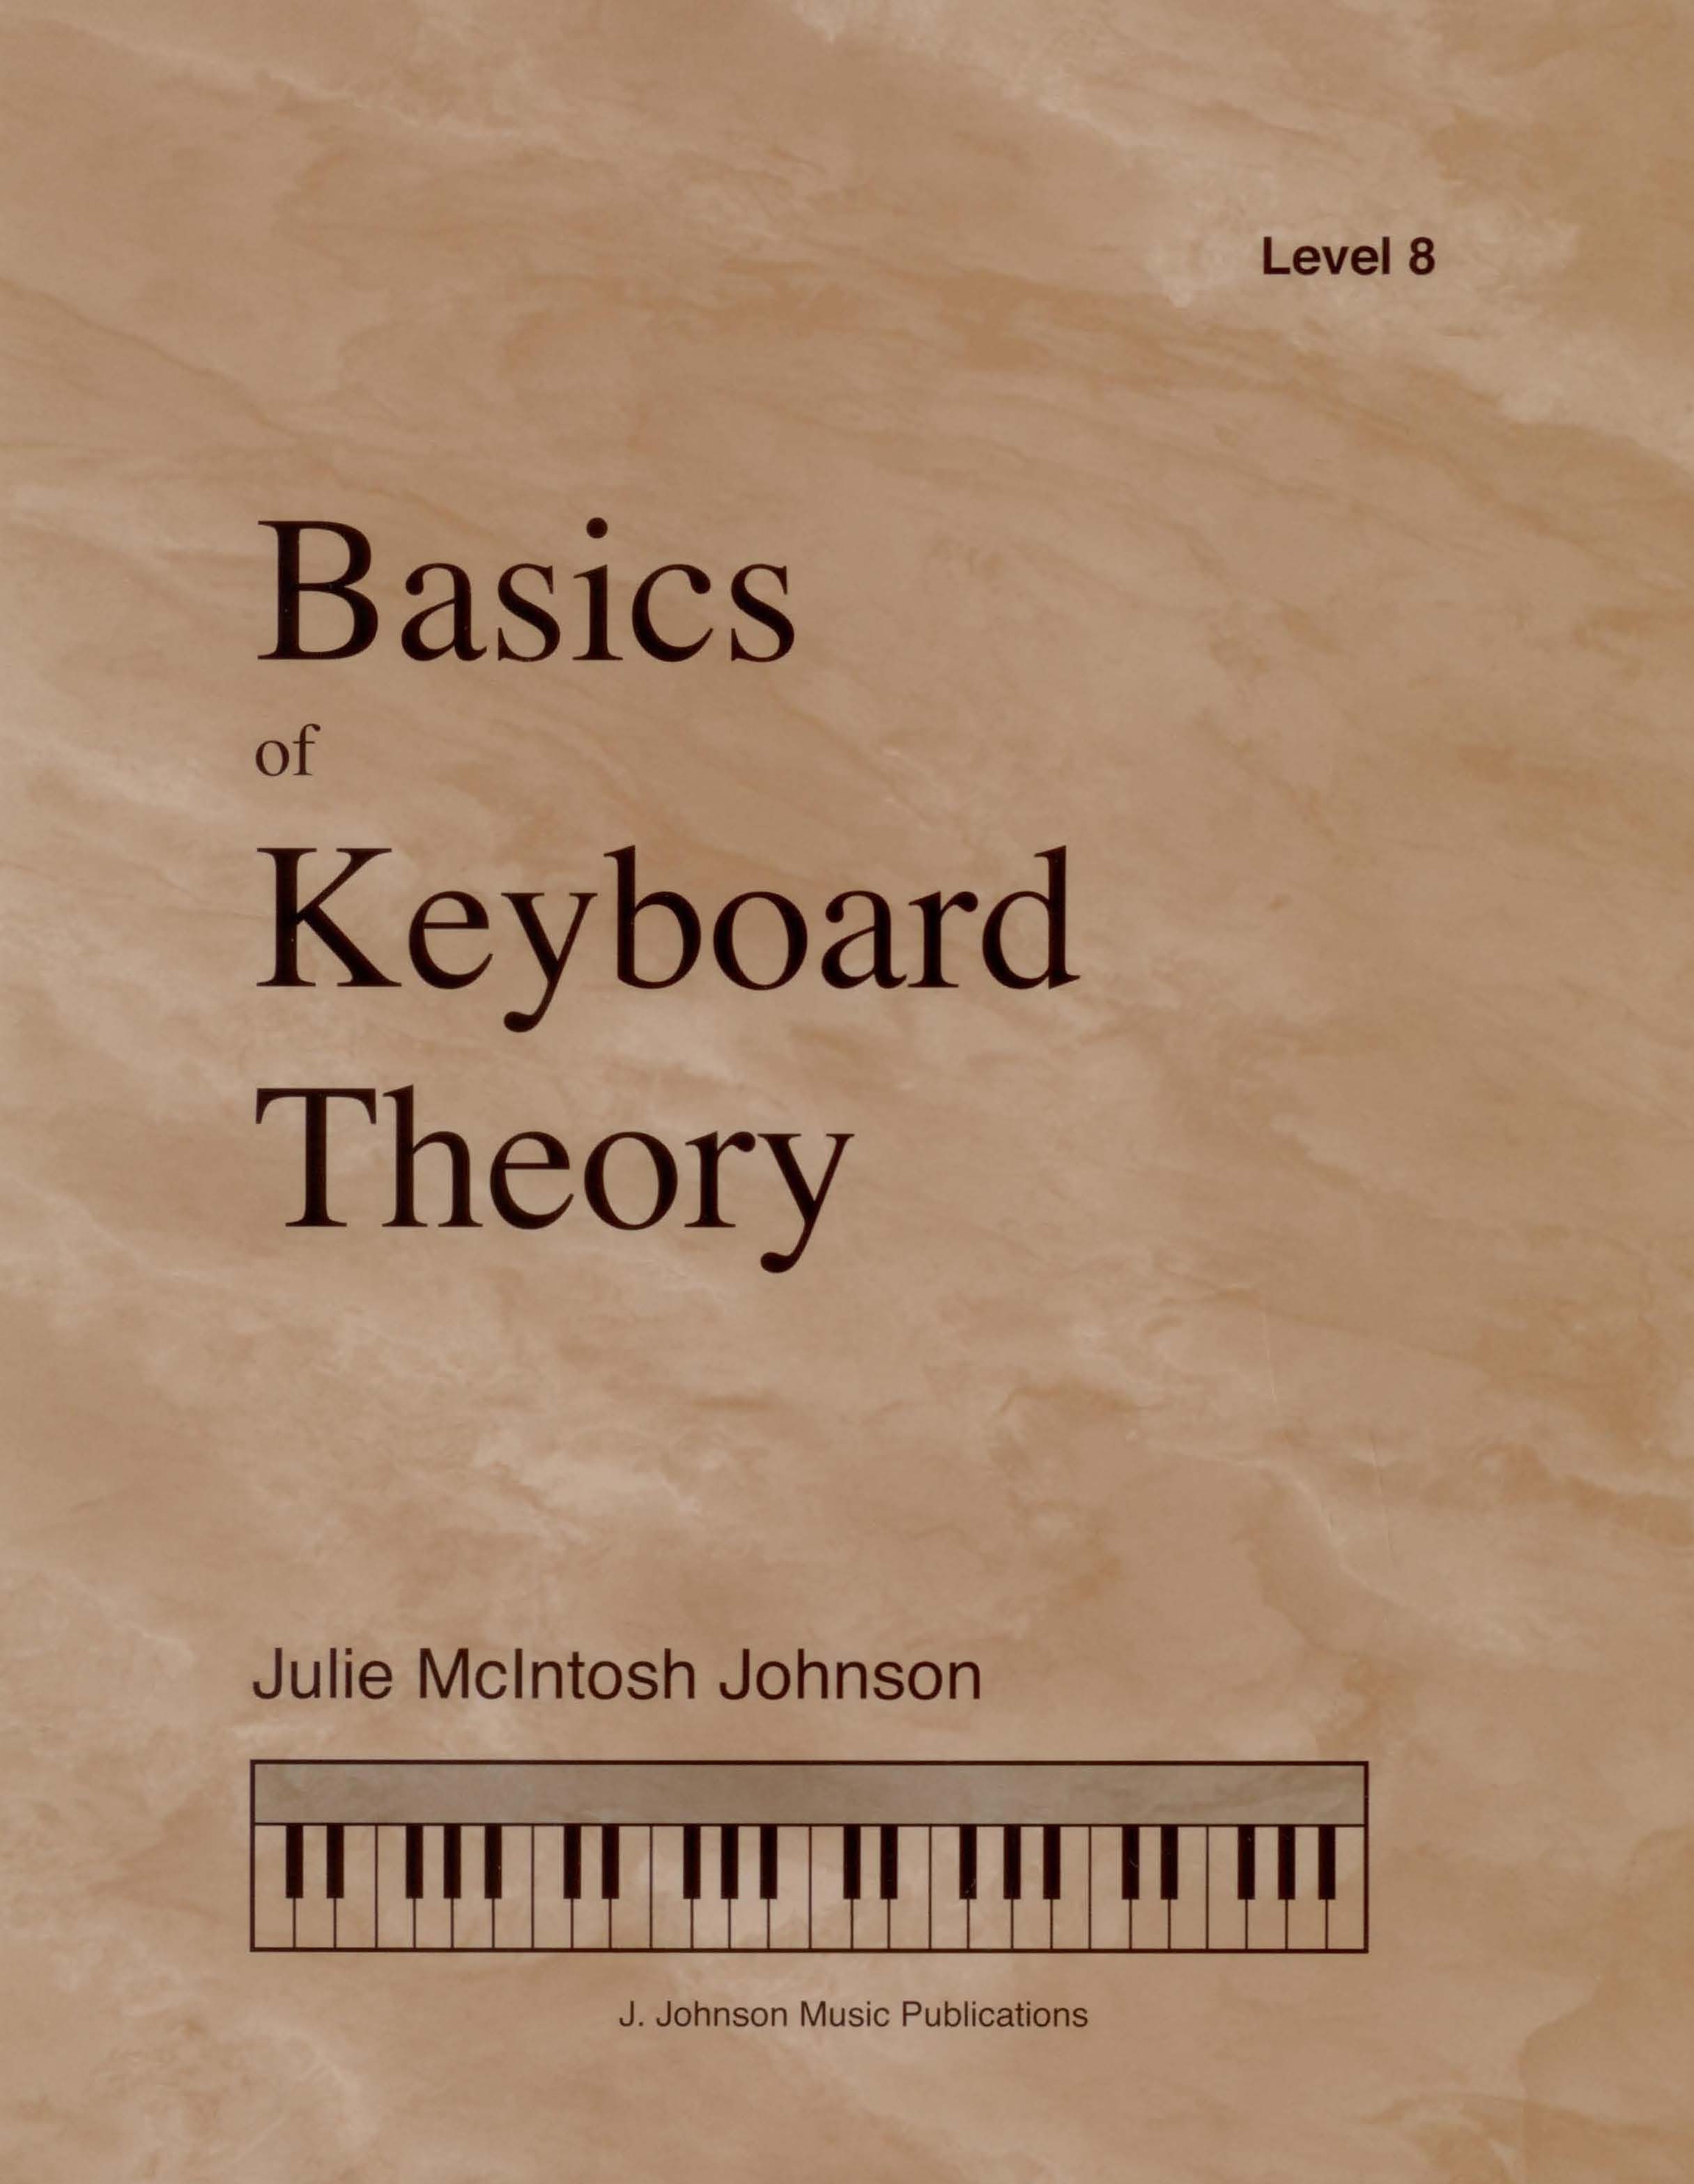 Basics of Keyboard Theory Level 8